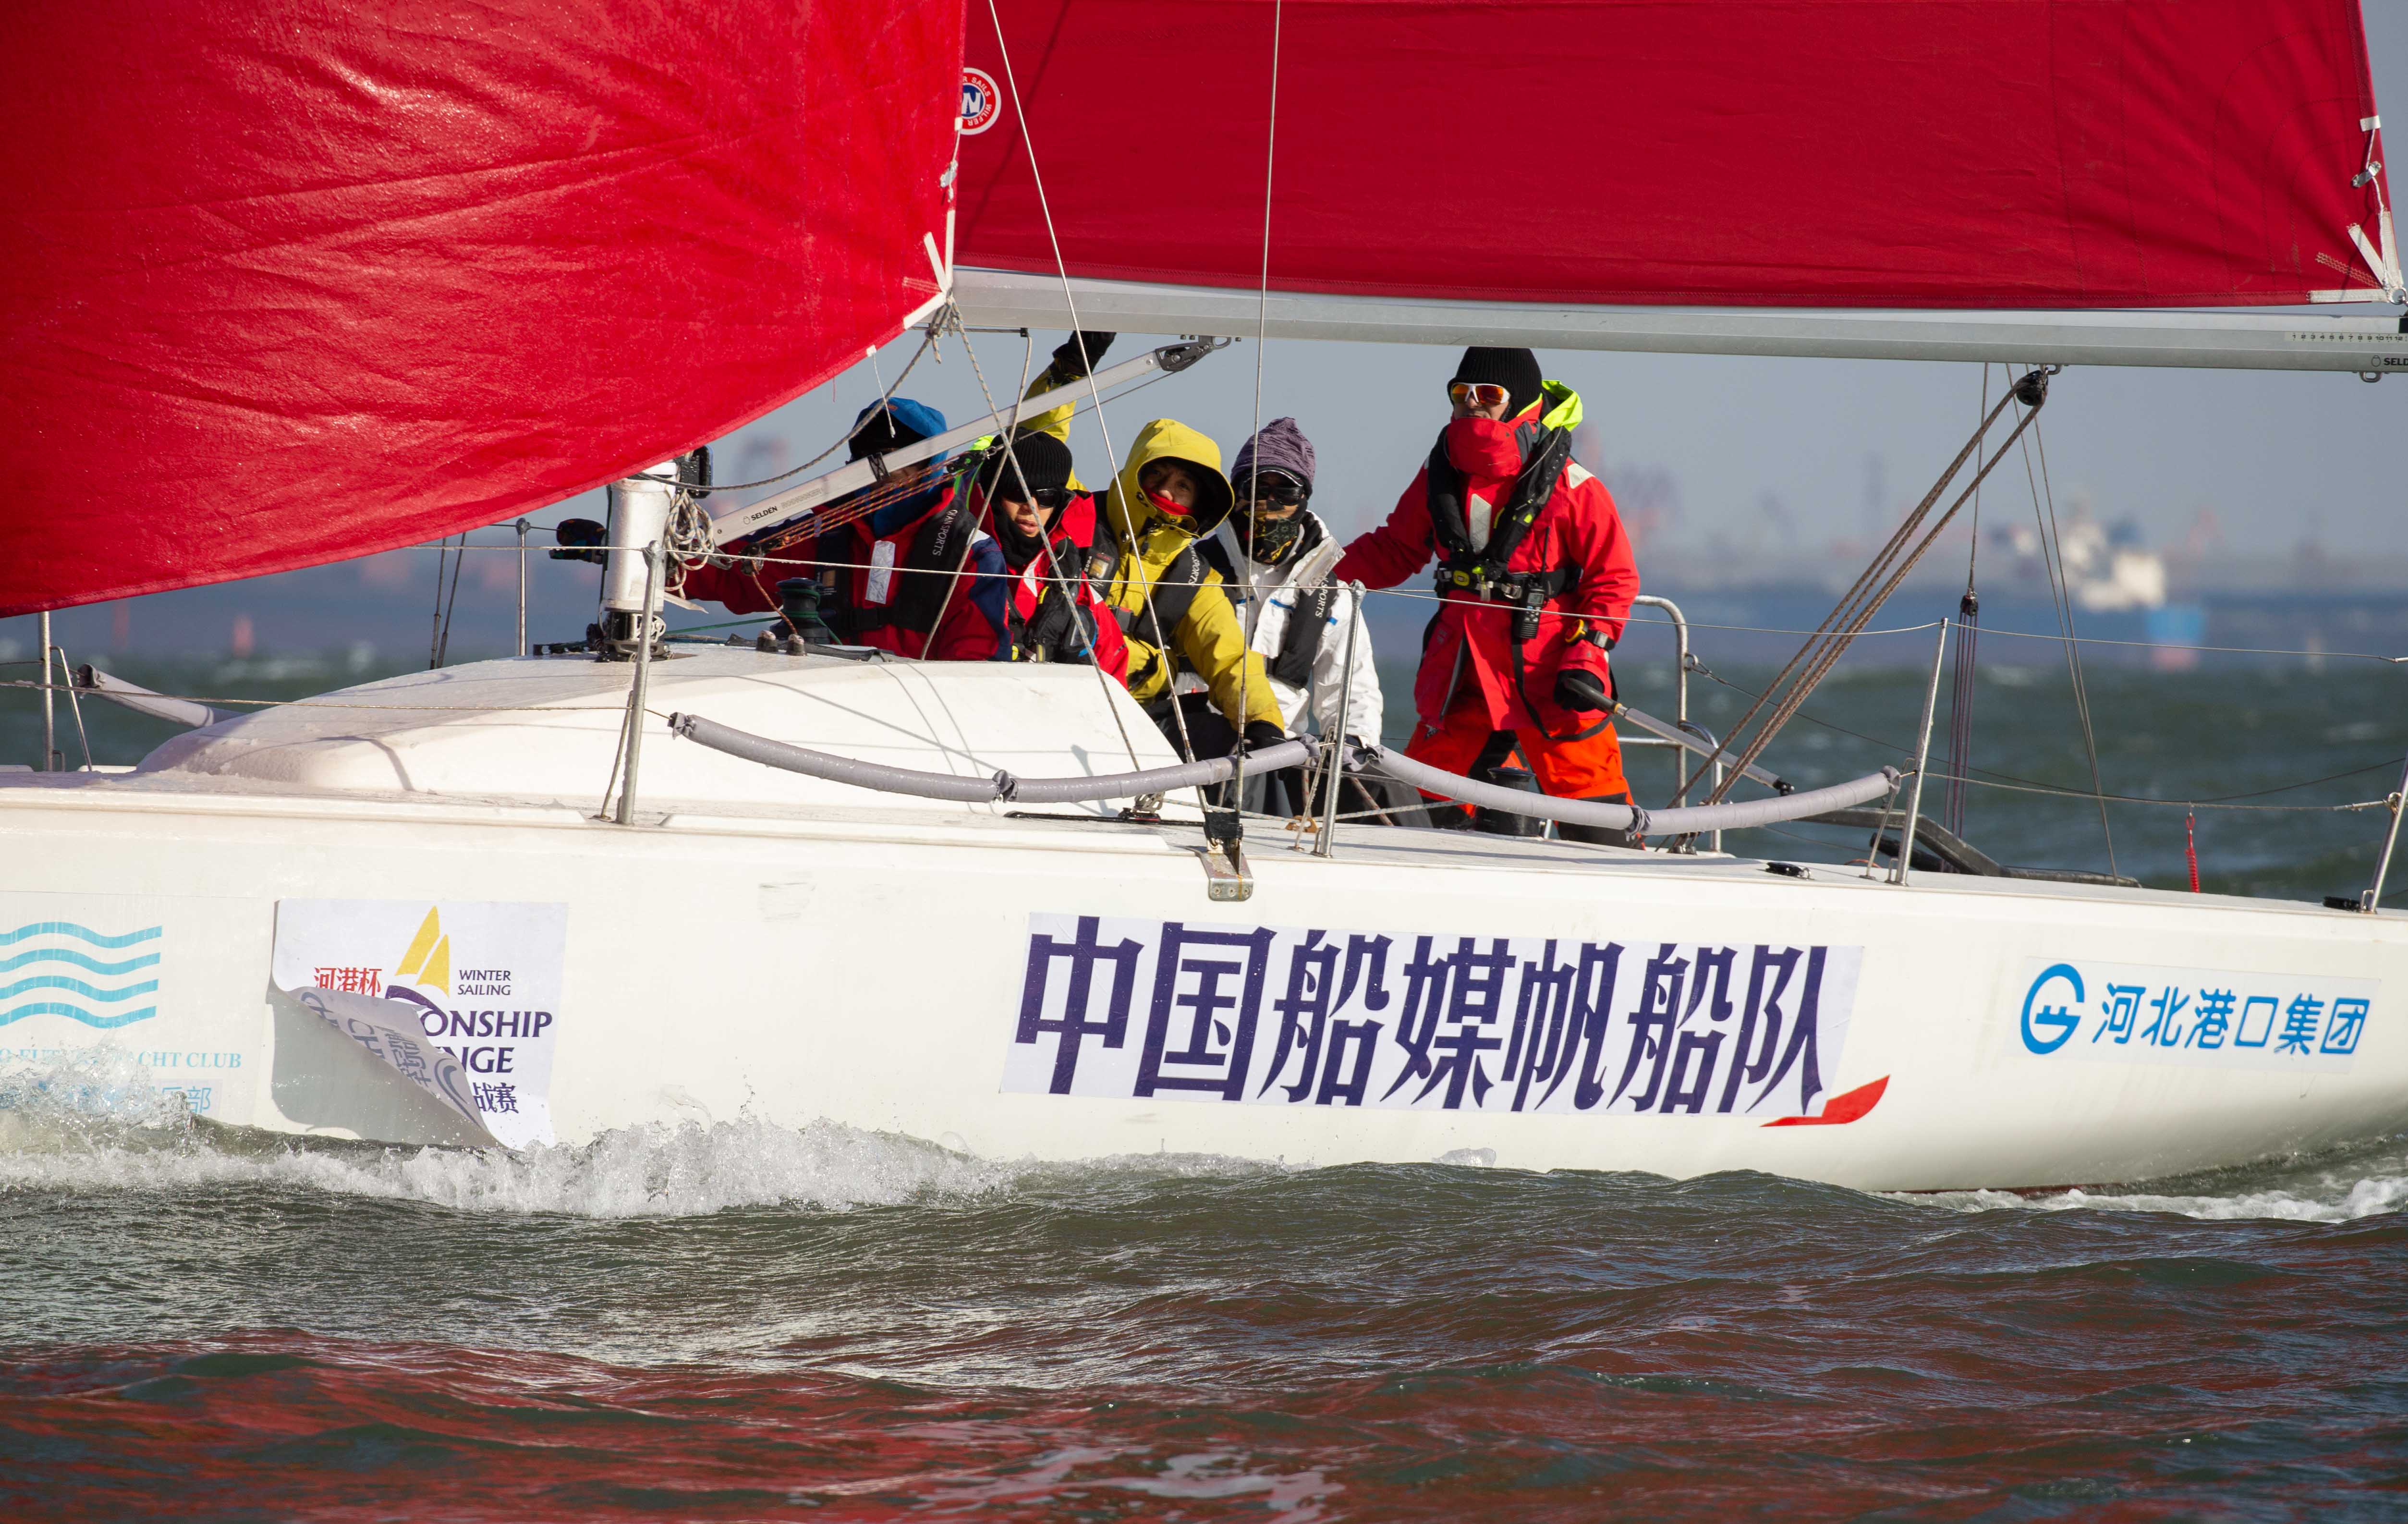 “河港杯”冬季帆船冠軍挑戰賽在秦皇島舉行